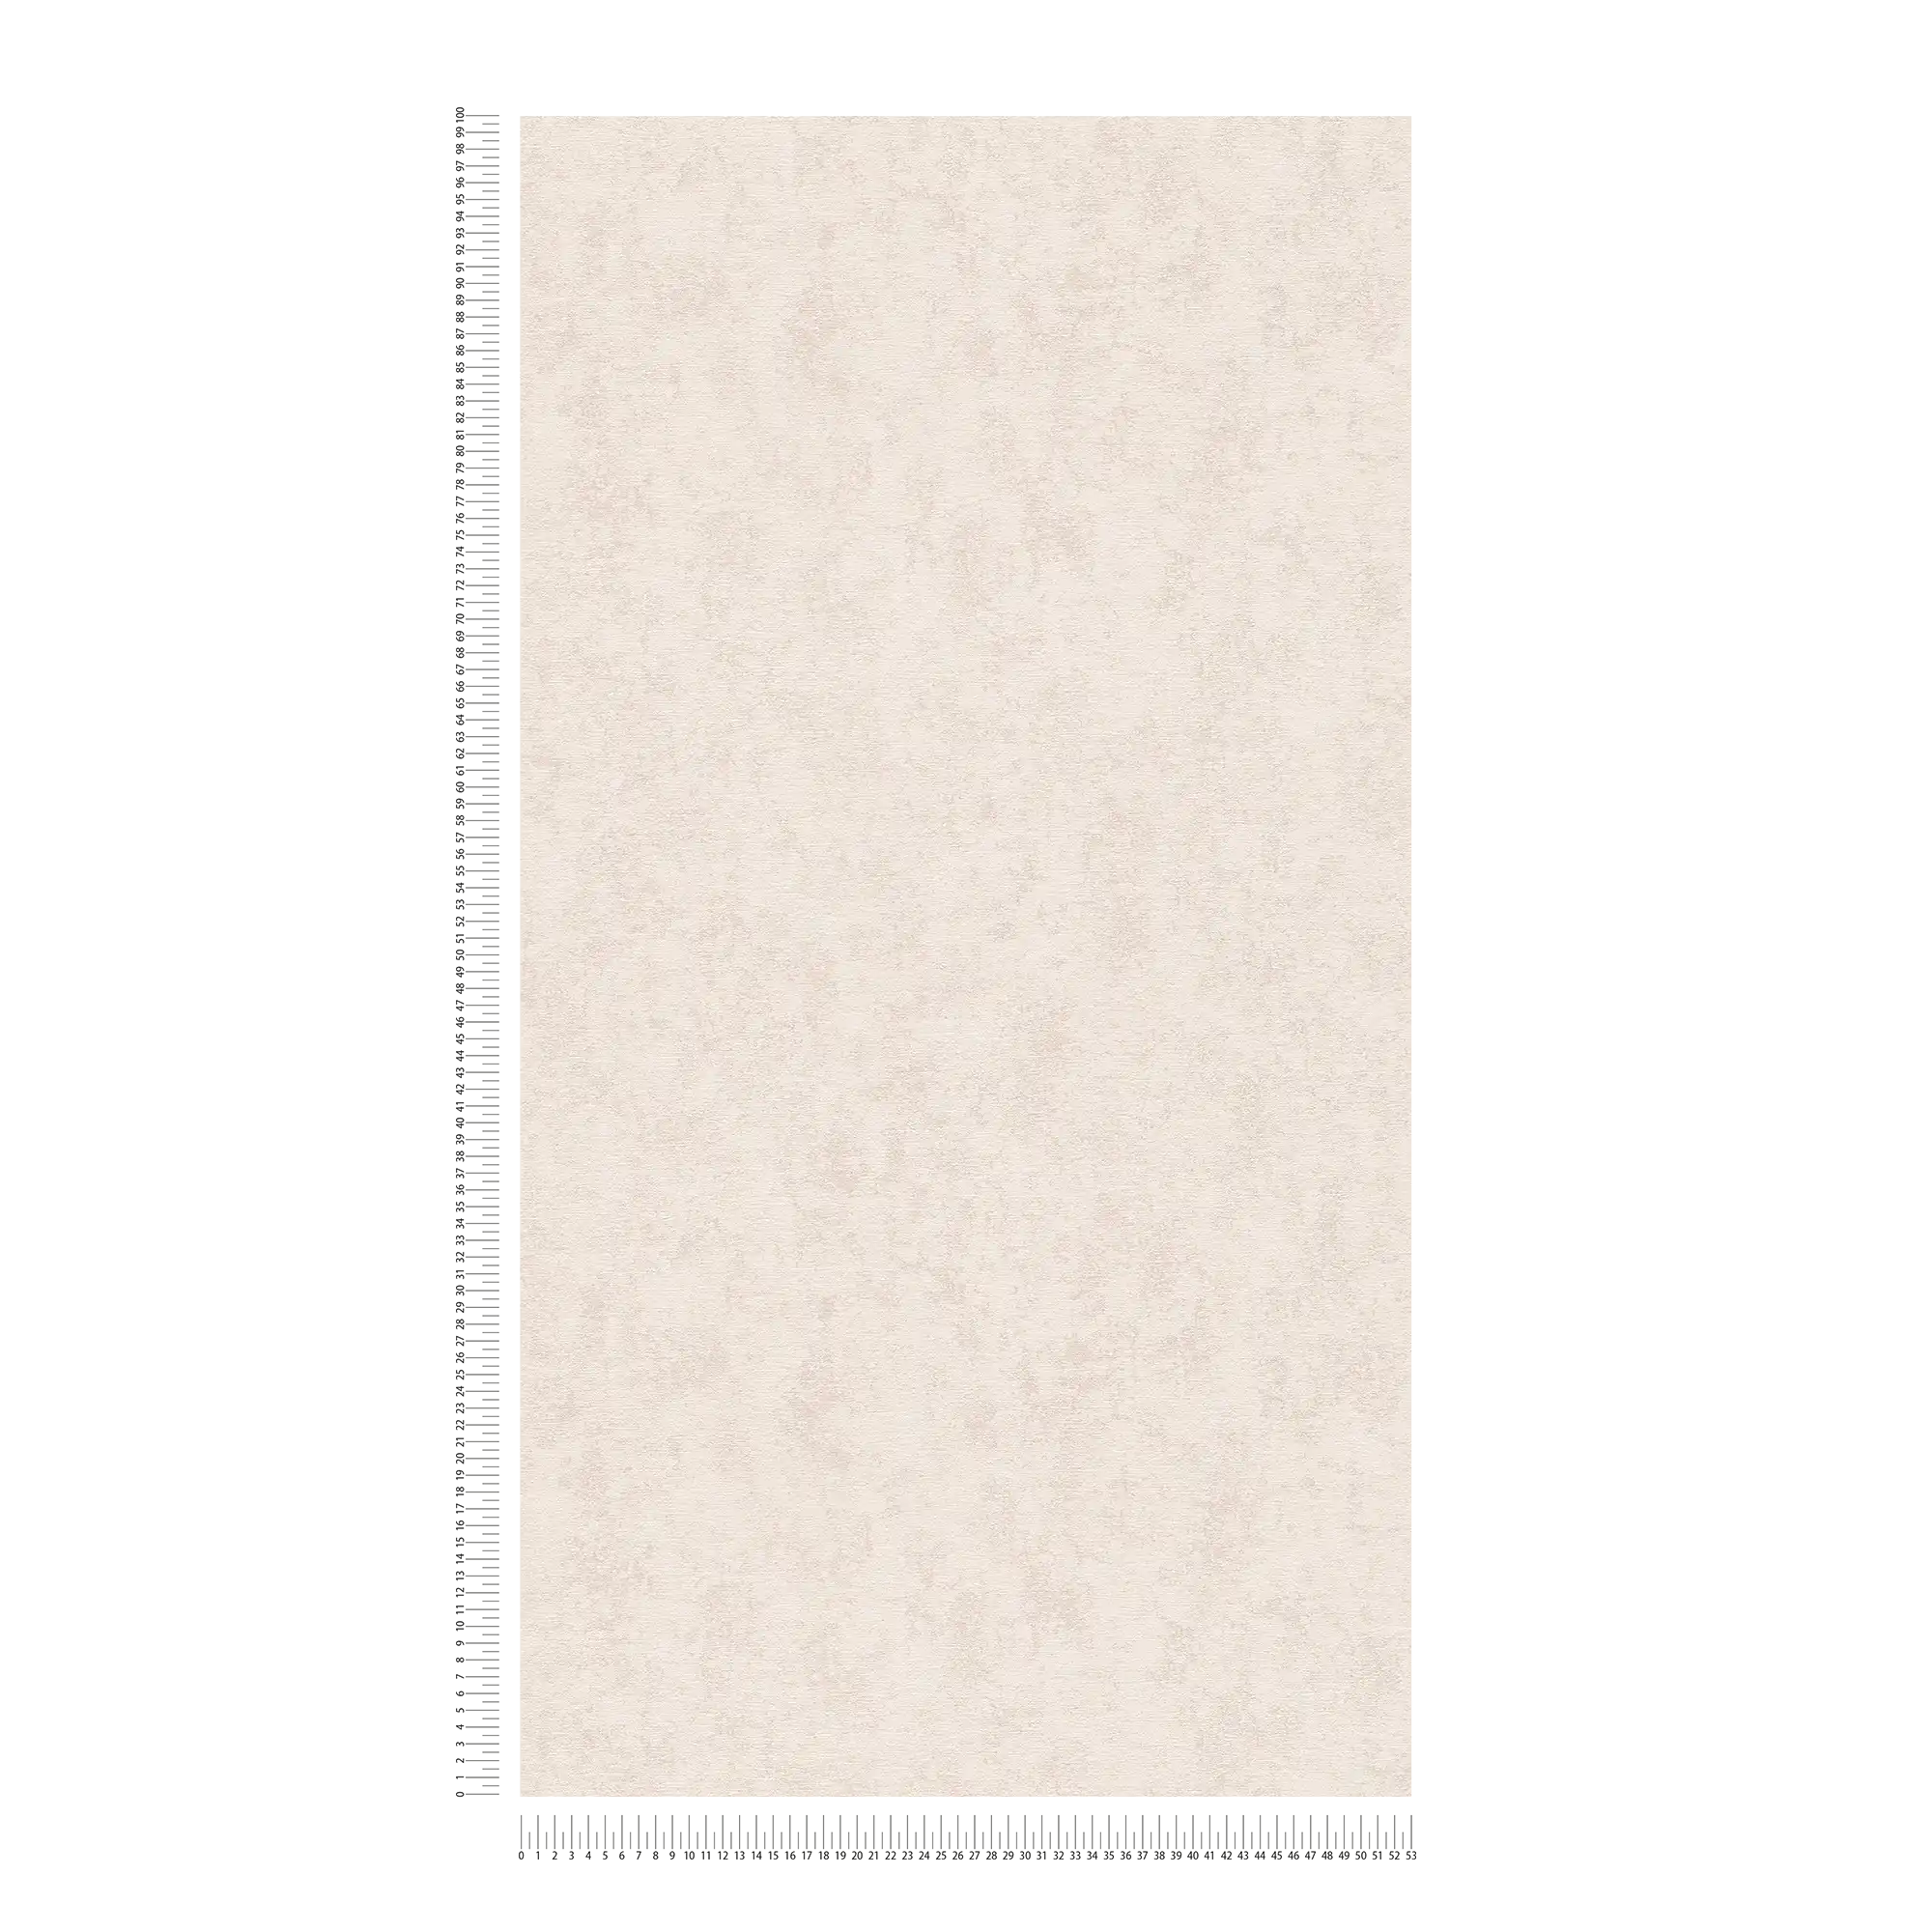             Papier peint imitation plâtre beige clair style scandi - beige, gris
        